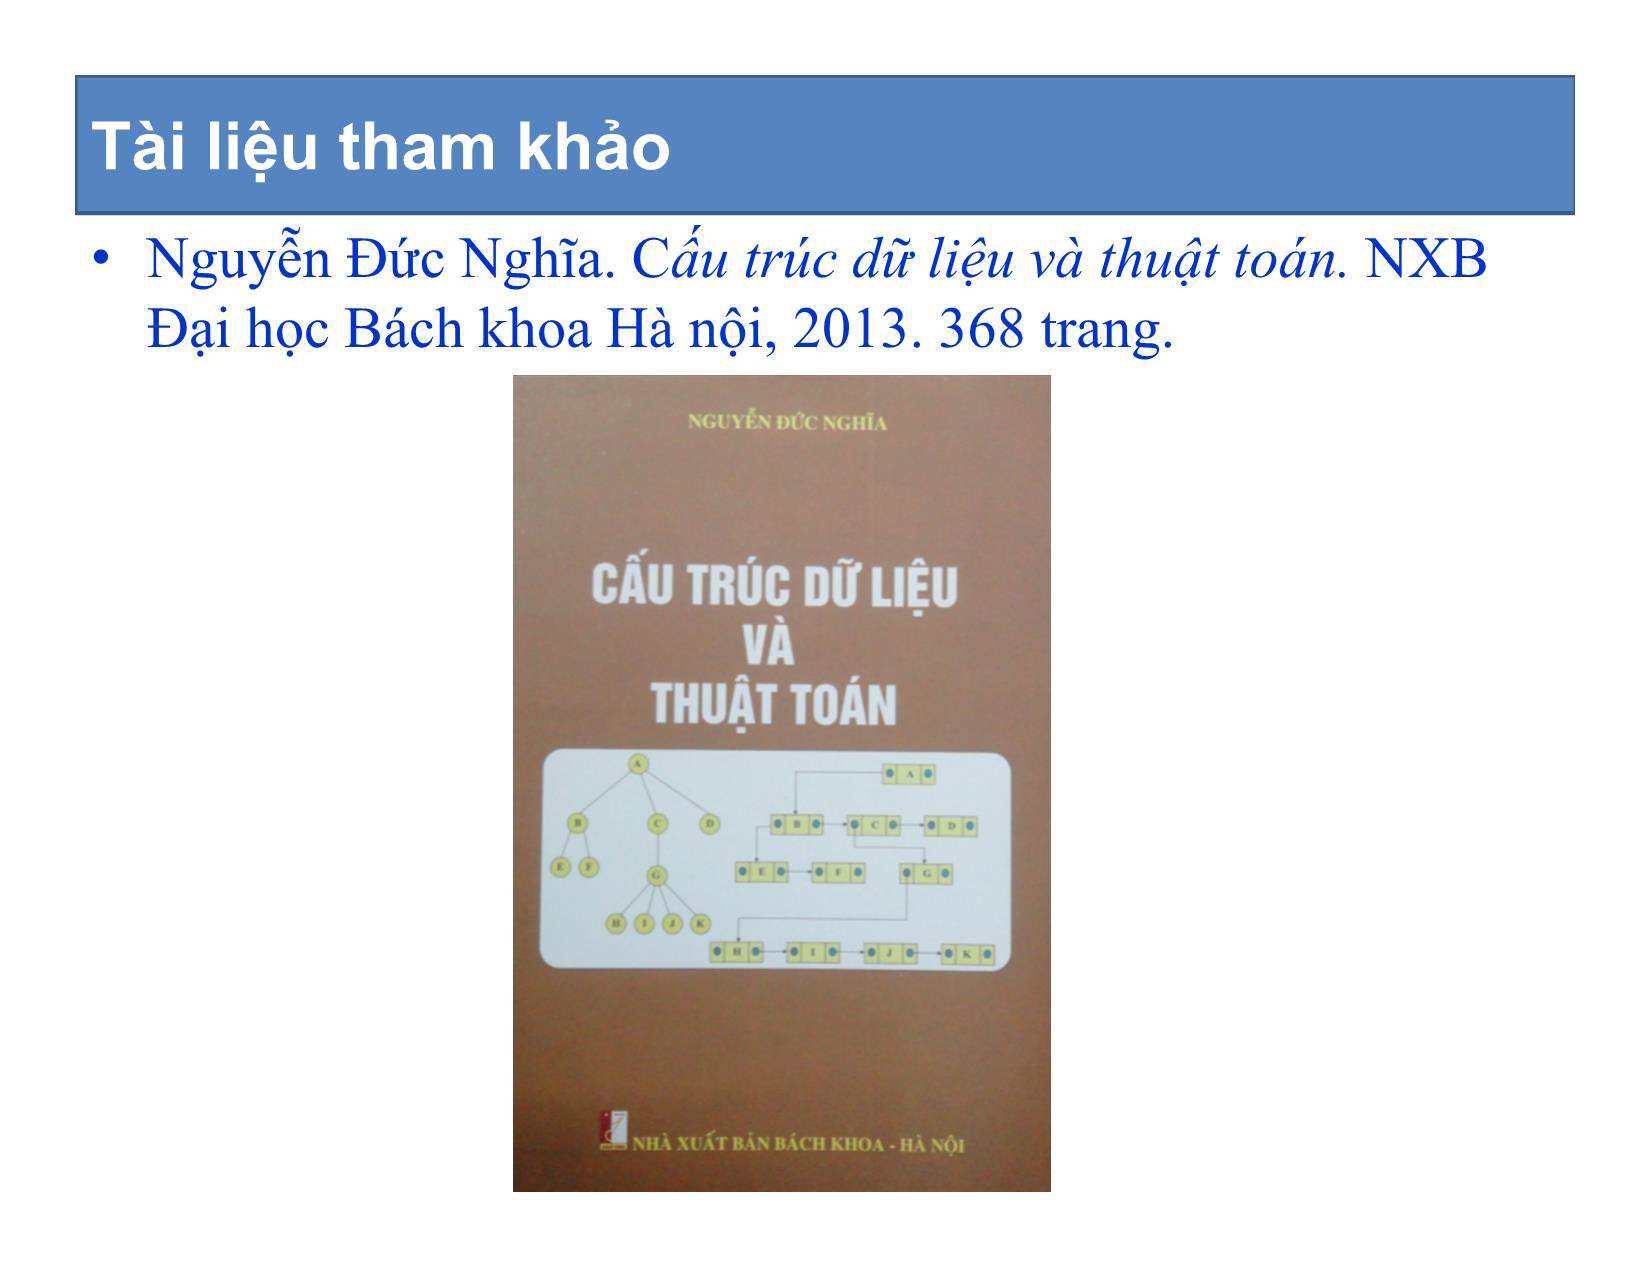 Bài giảng Cấu trúc dữ liệu và thuật toán - Chương mở đầu: Giới thiệu môn học - Nguyễn Khánh Phương trang 8